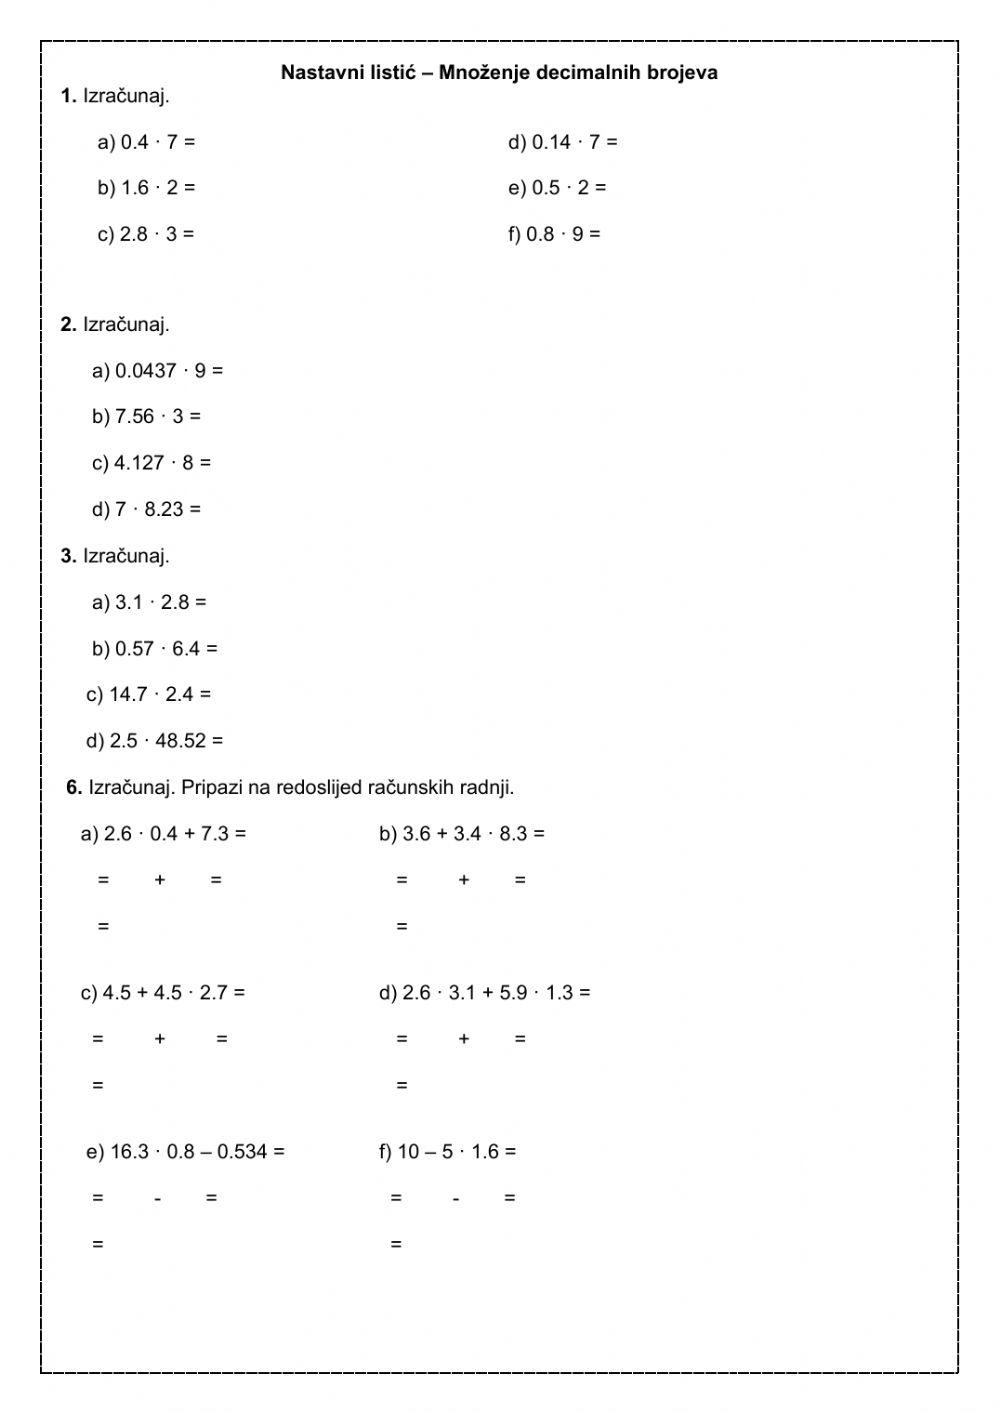 Nastavni listić - Množenje decimalnih brojeva